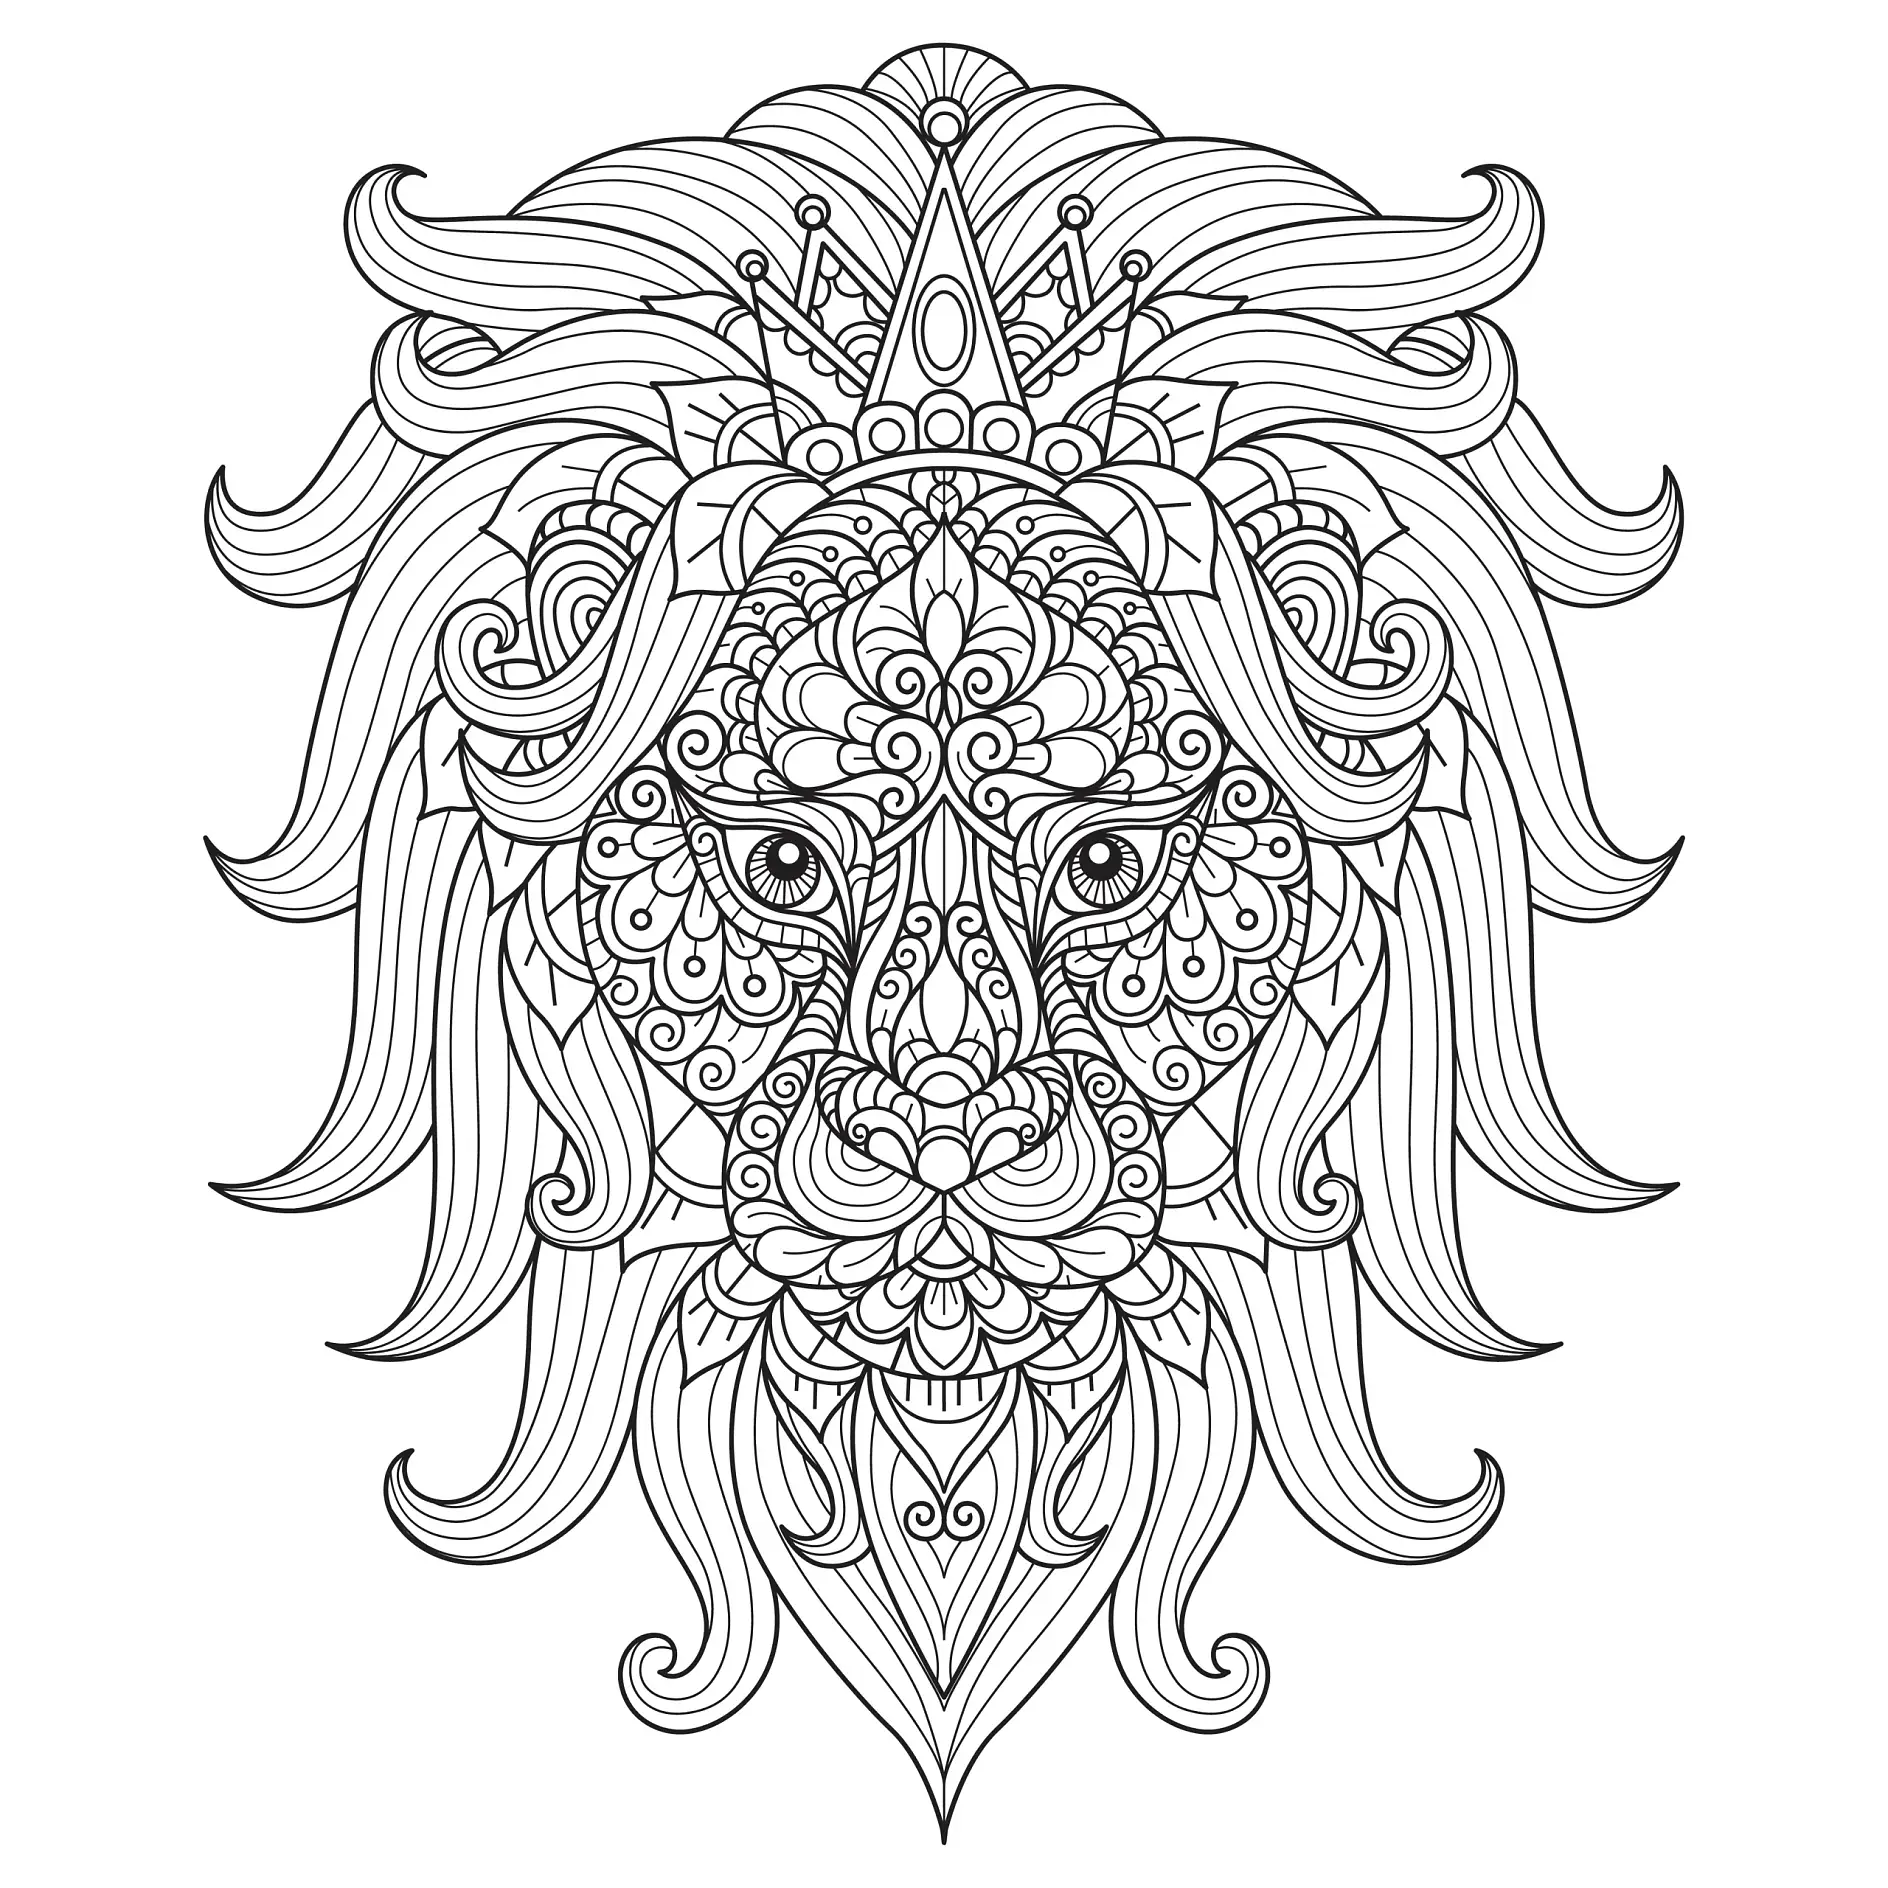 Ausmalbild Mandala mit Löwe und Krone mit dekorativen Mustern und Details